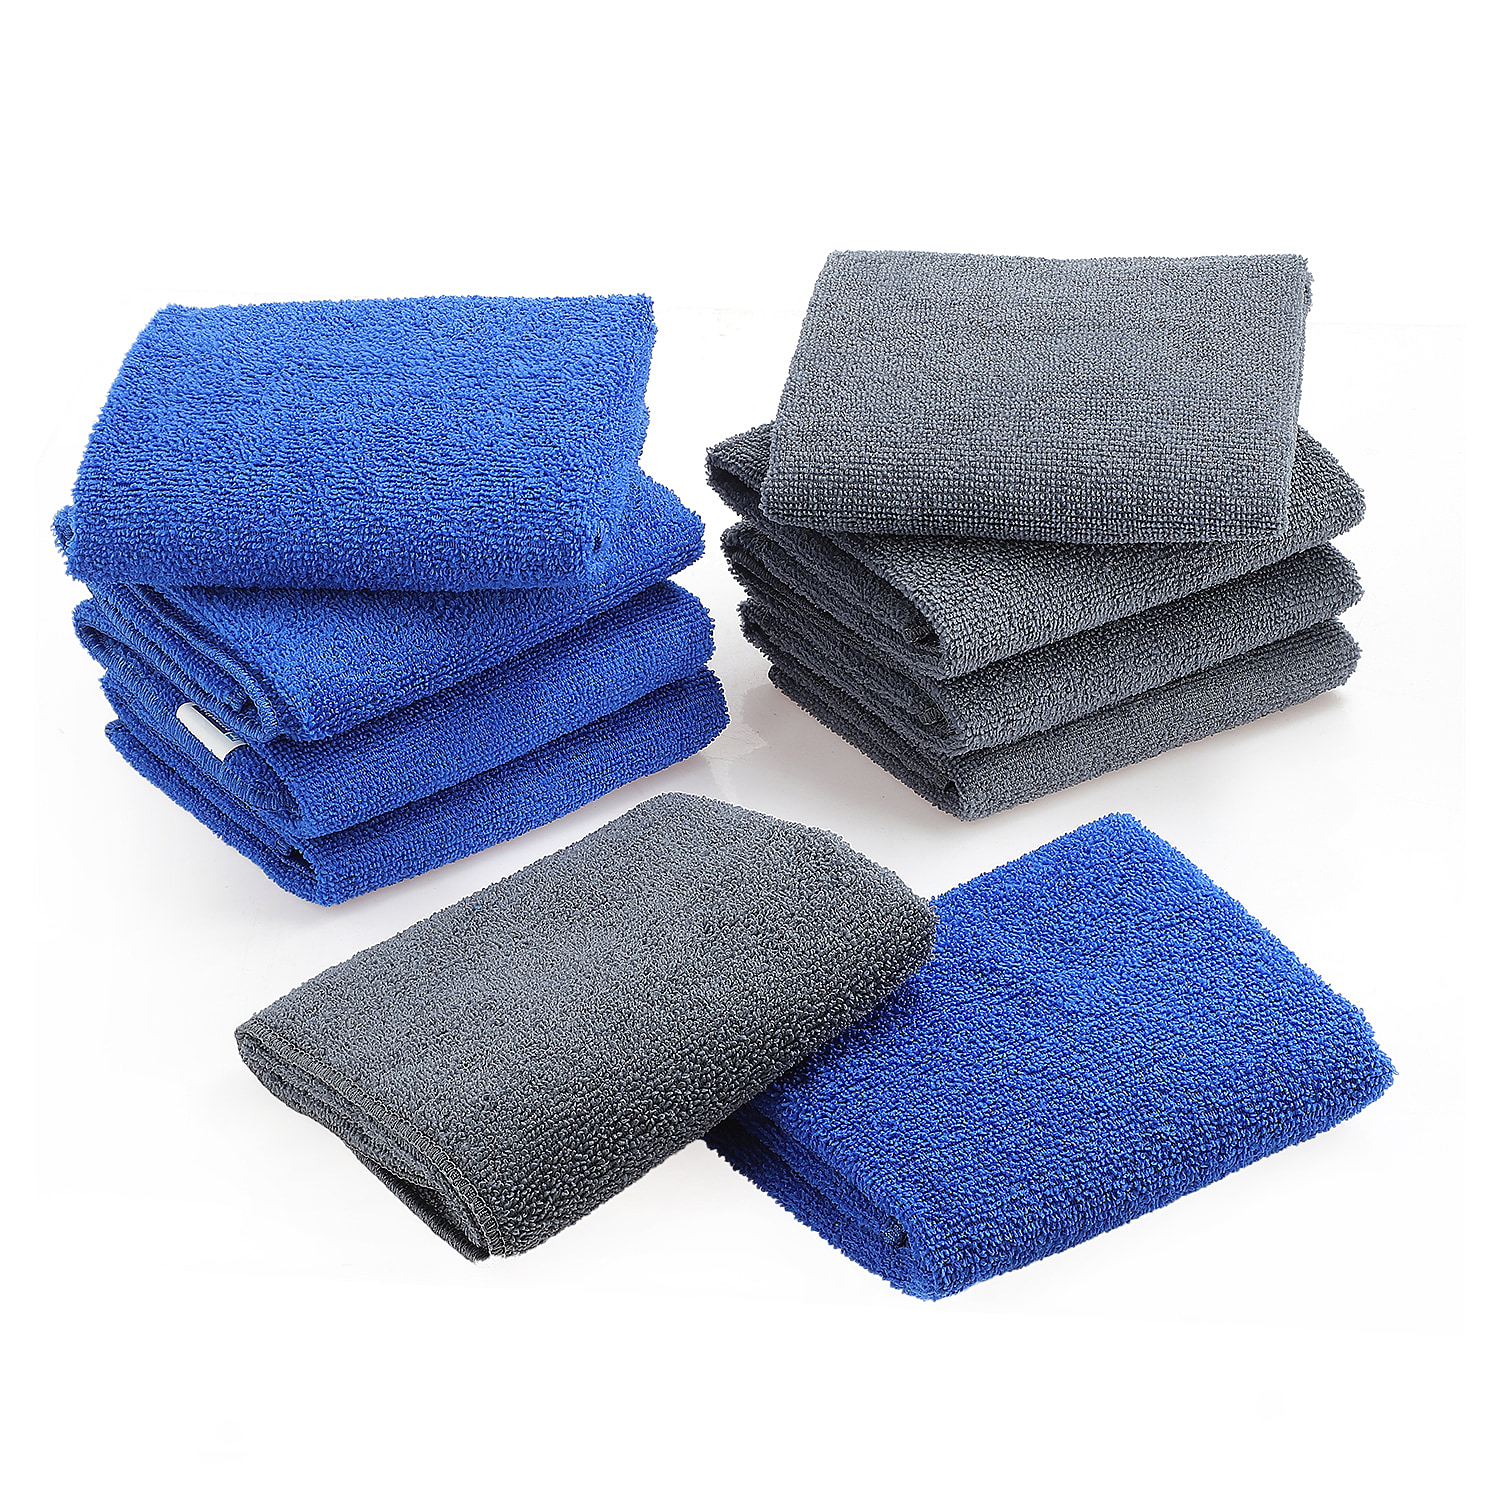 Cotton-Solid-Washcloth-Size-40x1-cm-Blue-Grey